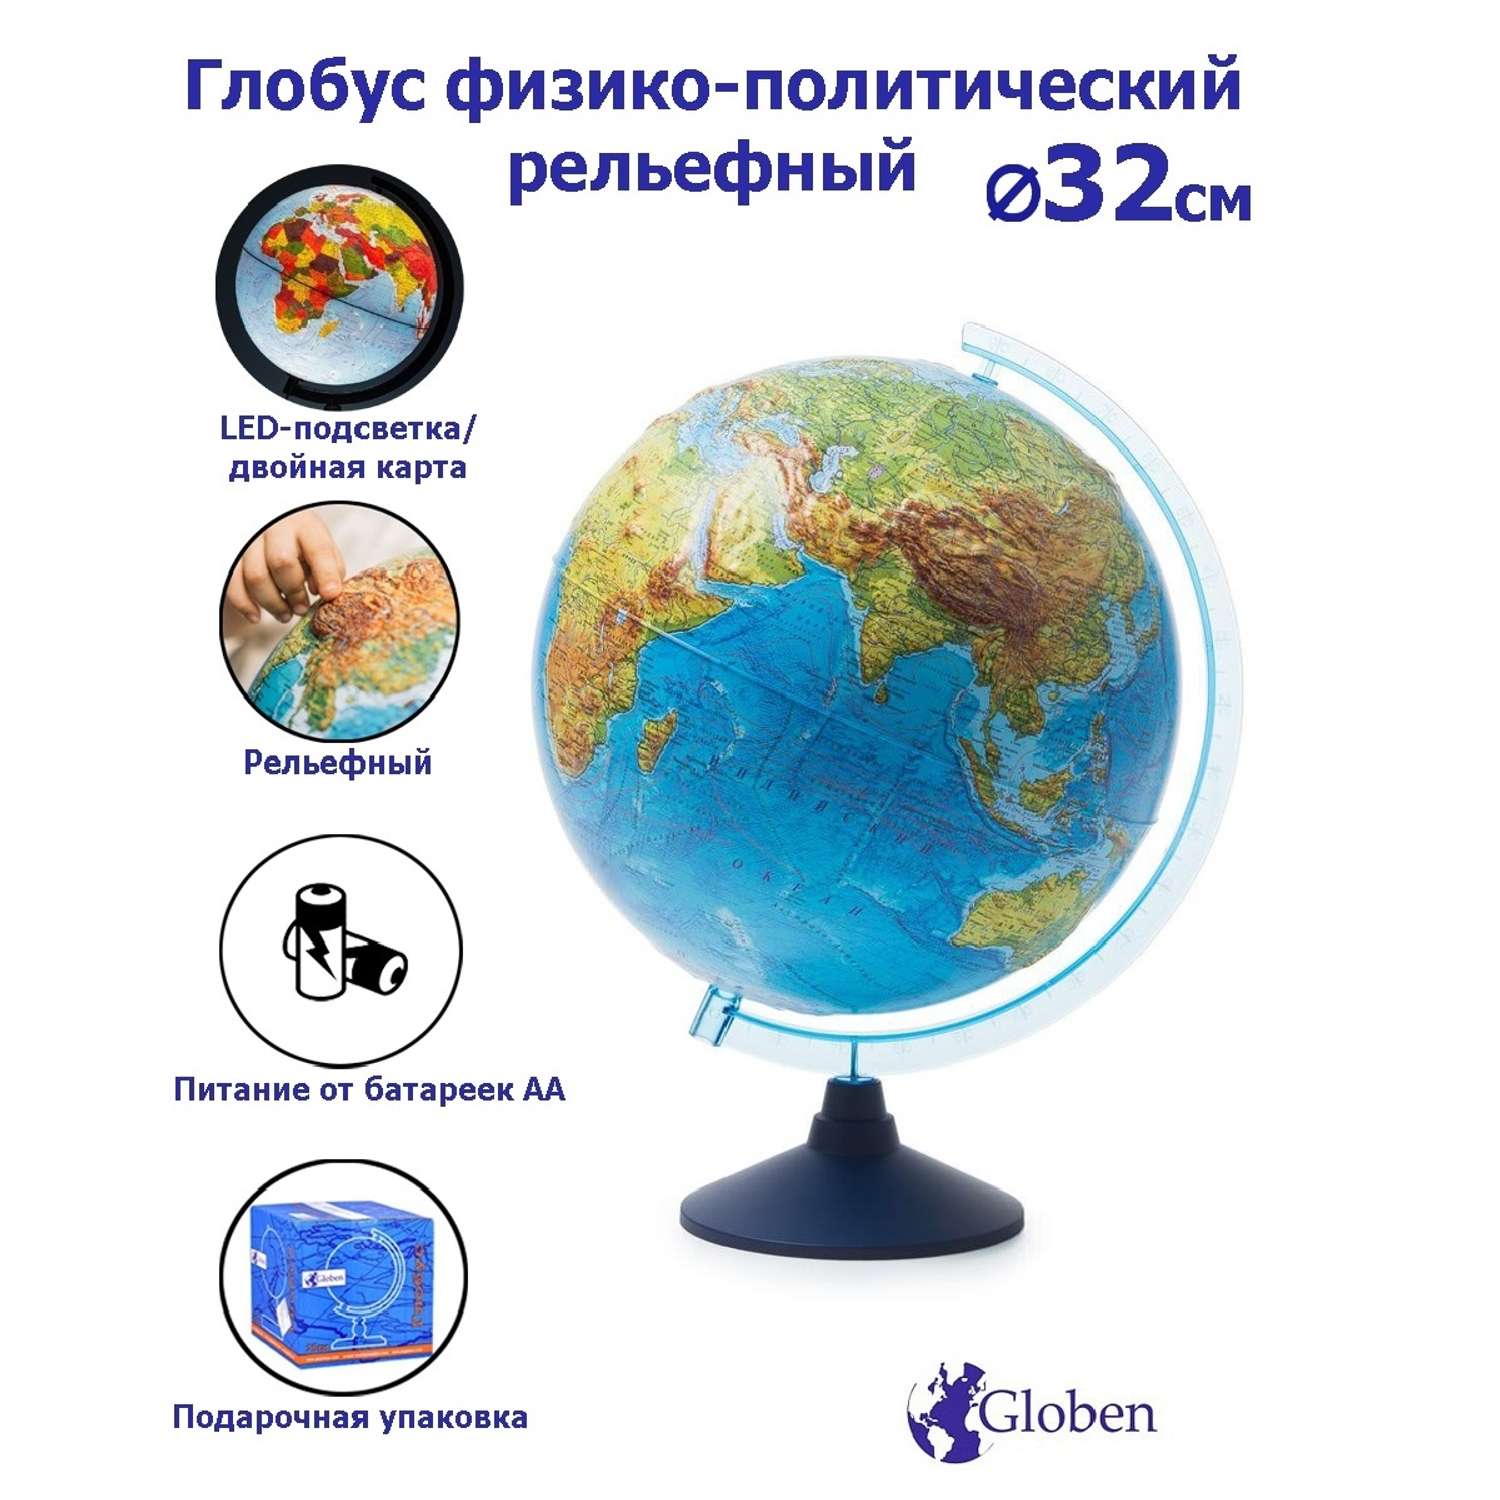 Глобус Globen Земли физико-политический рельефный диаметр 32см с подсветкой - фото 1